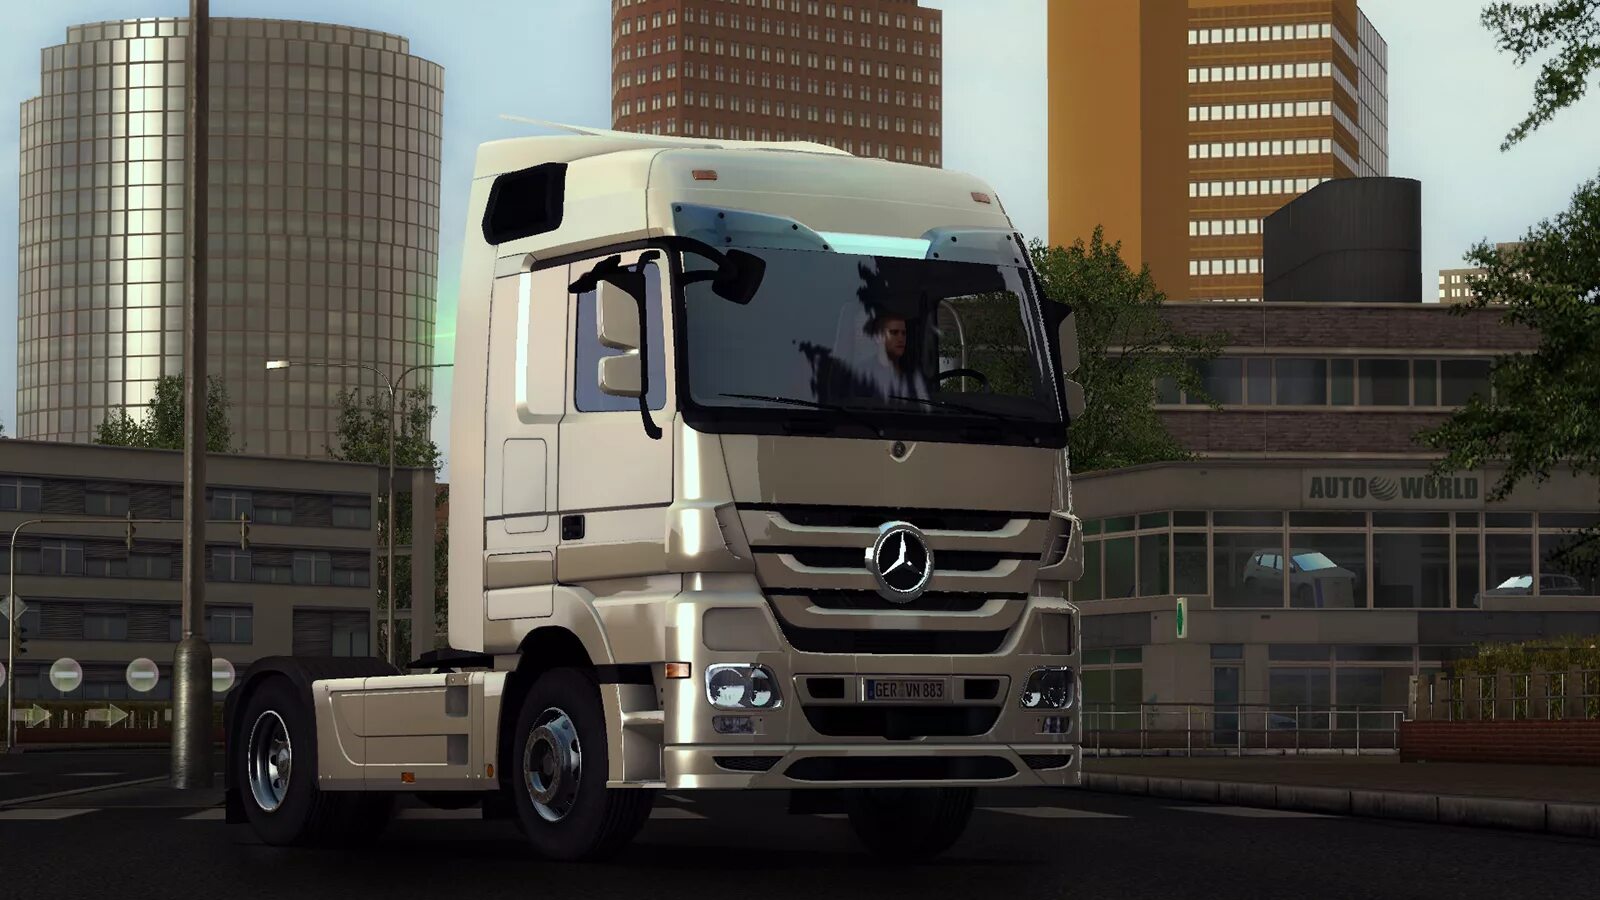 Euro Truck Simulator 2. Euro Truck Simulator 2 Скриншоты. Euro Truck Simulator 2 2012. Етс красивые скрины.